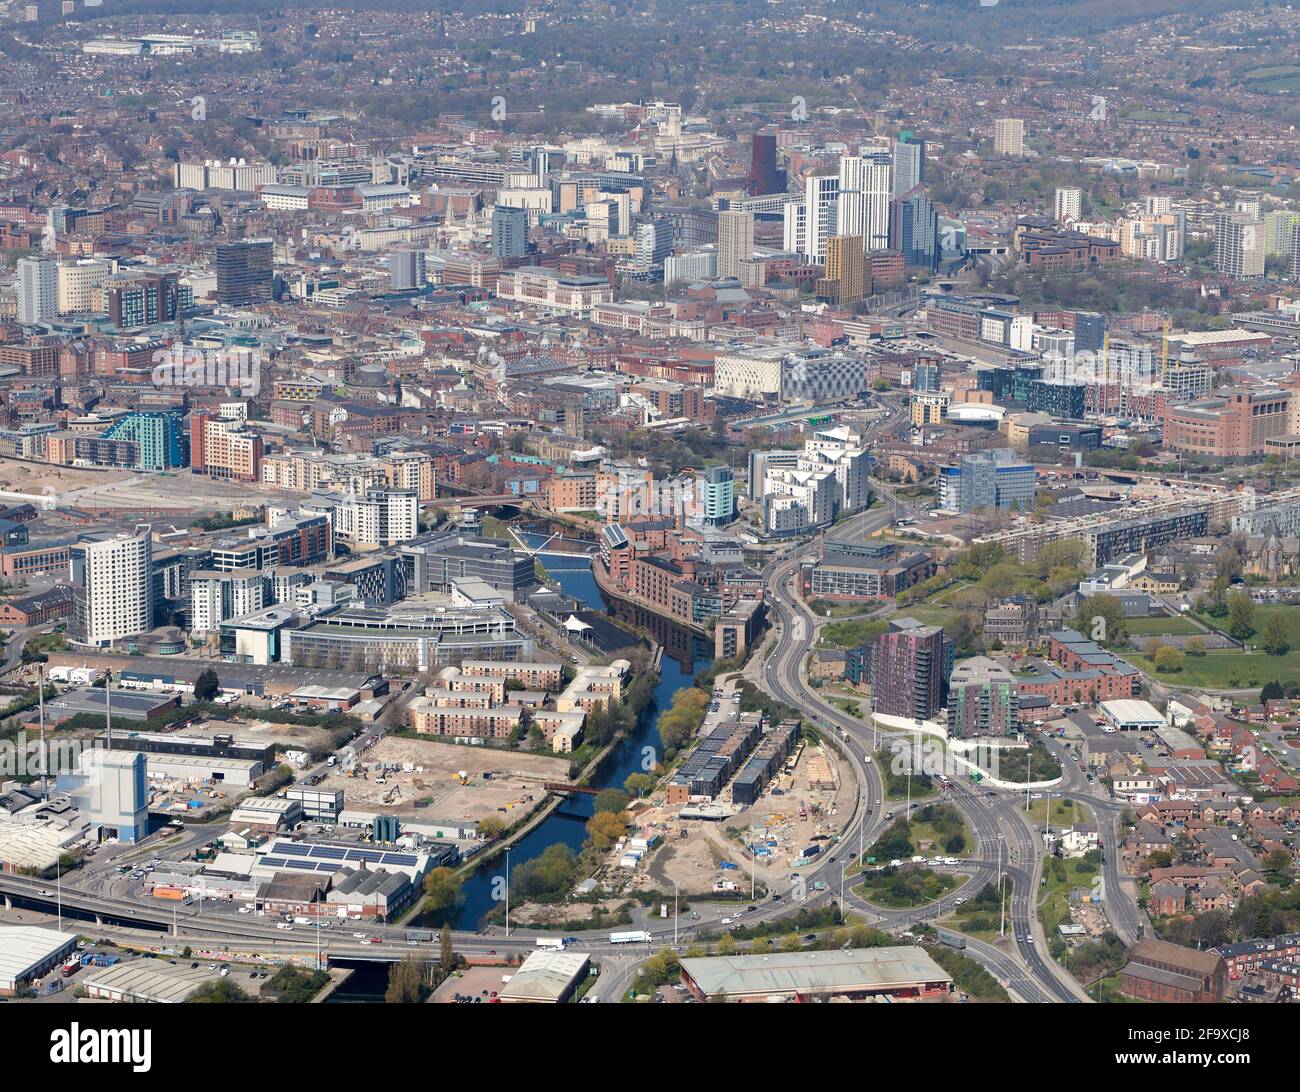 Vue aérienne du centre-ville de Leeds, West Yorkshire, nord de l'Angleterre, Royaume-Uni, depuis l'est, en regardant la rivière aire, montrant un nouveau développement au bord de la rivière Banque D'Images